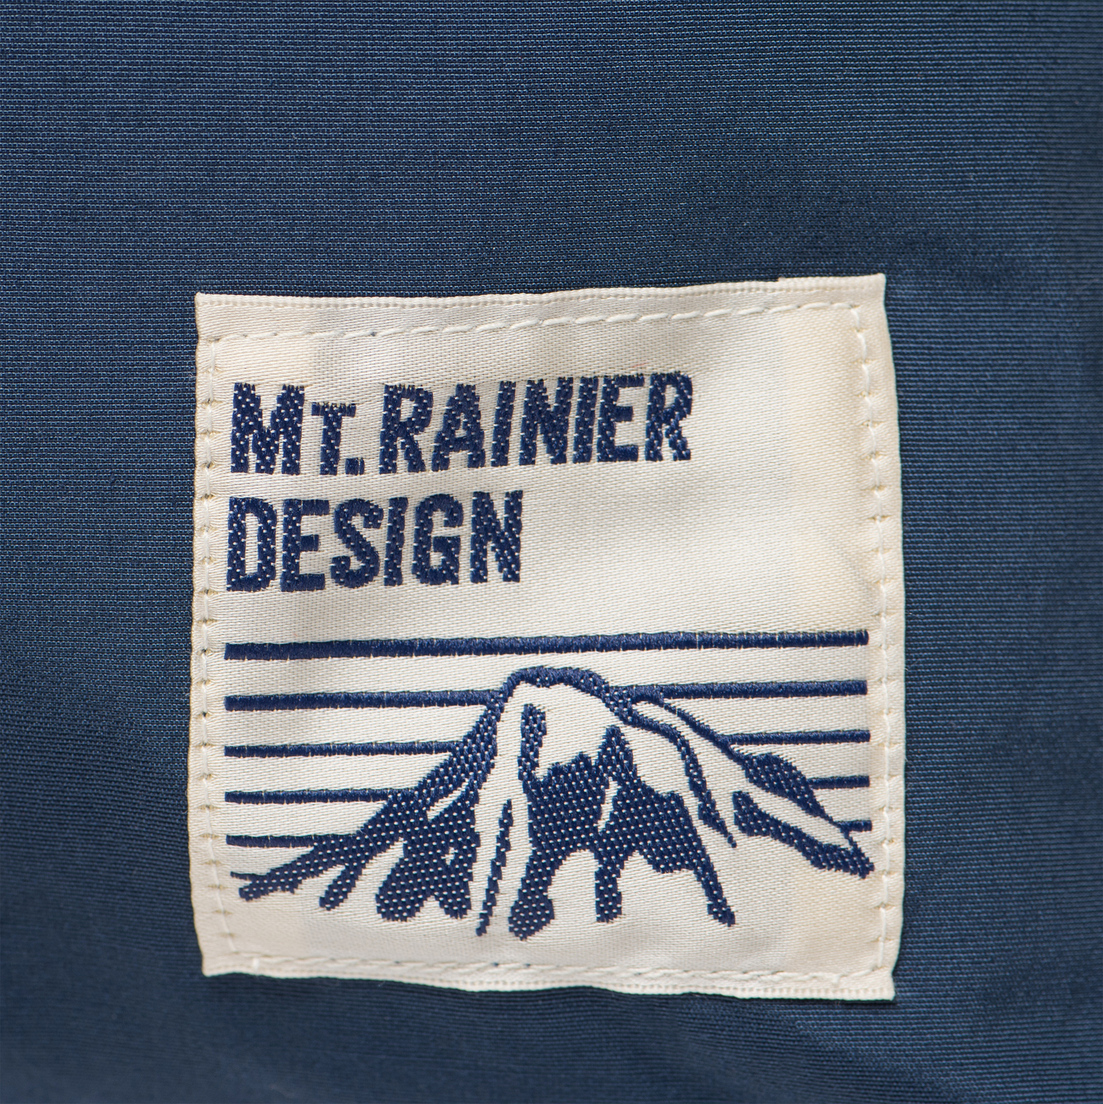 Mt. Rainier Design Рюкзак Original Pocket Simple Pack